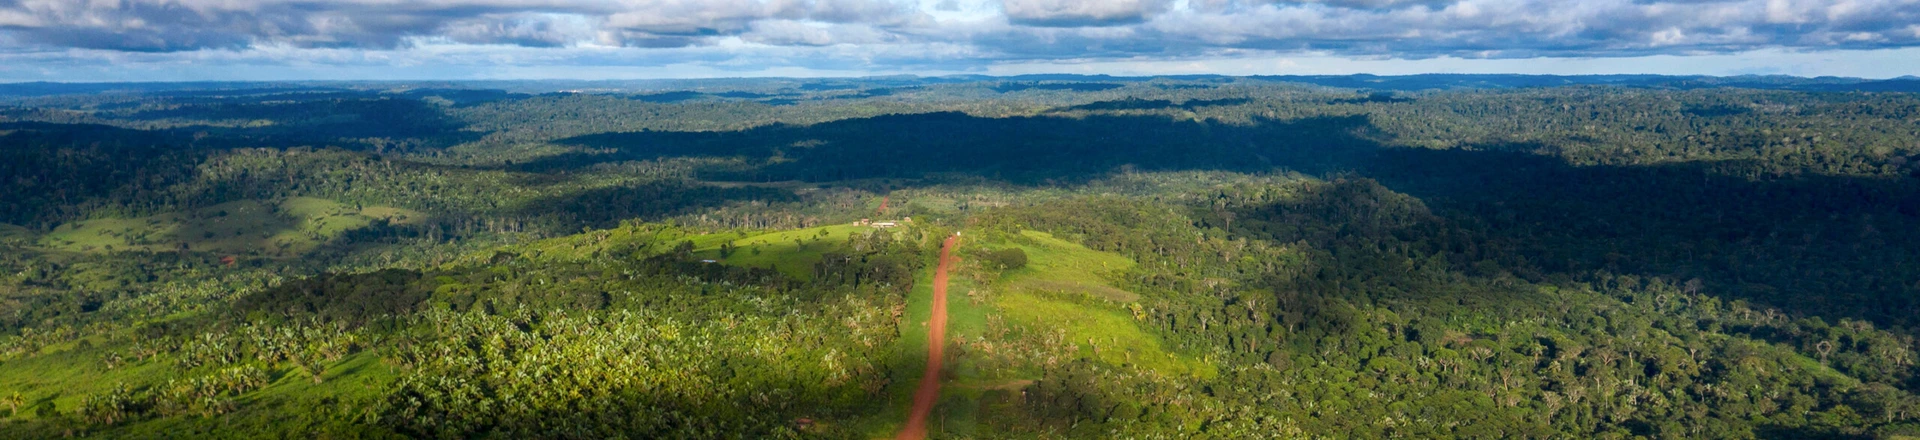 Vista aérea da rodovia Transamazônica perto de Medicilândia, no Pará, em 13 de março de 2019.